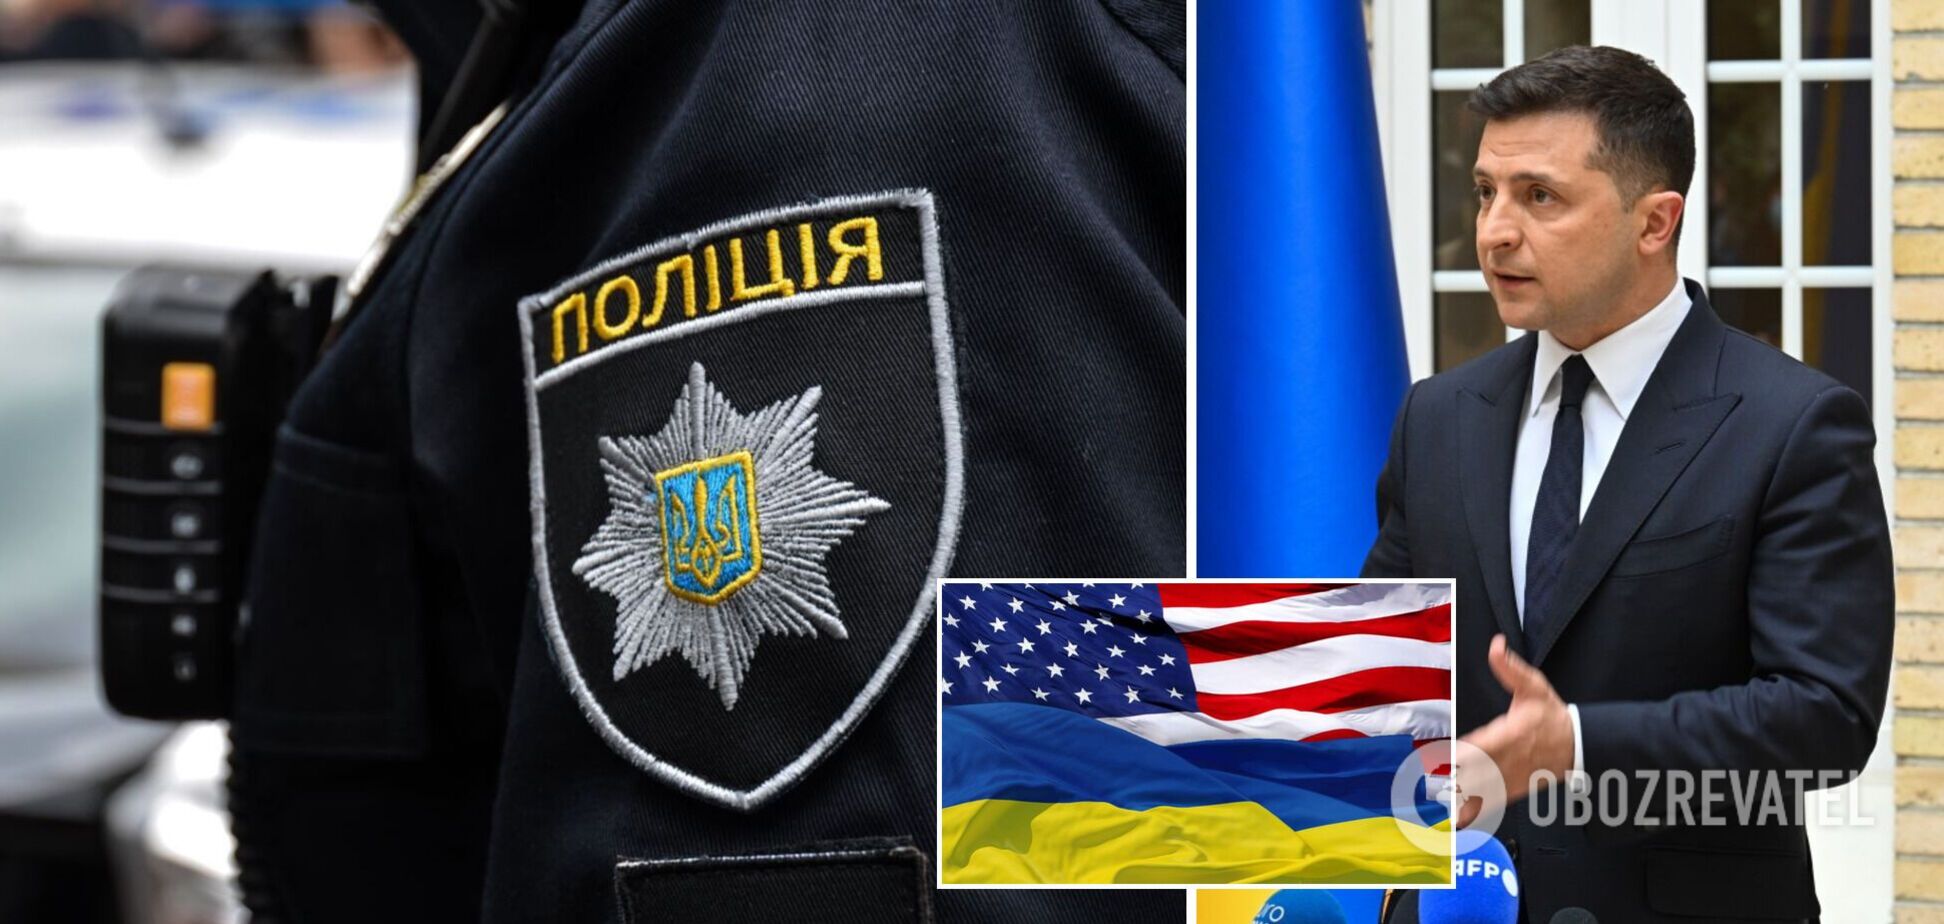 Новини України: Зеленський вирушить із візитом у США, а в Запоріжжі розкрили вбивство професора